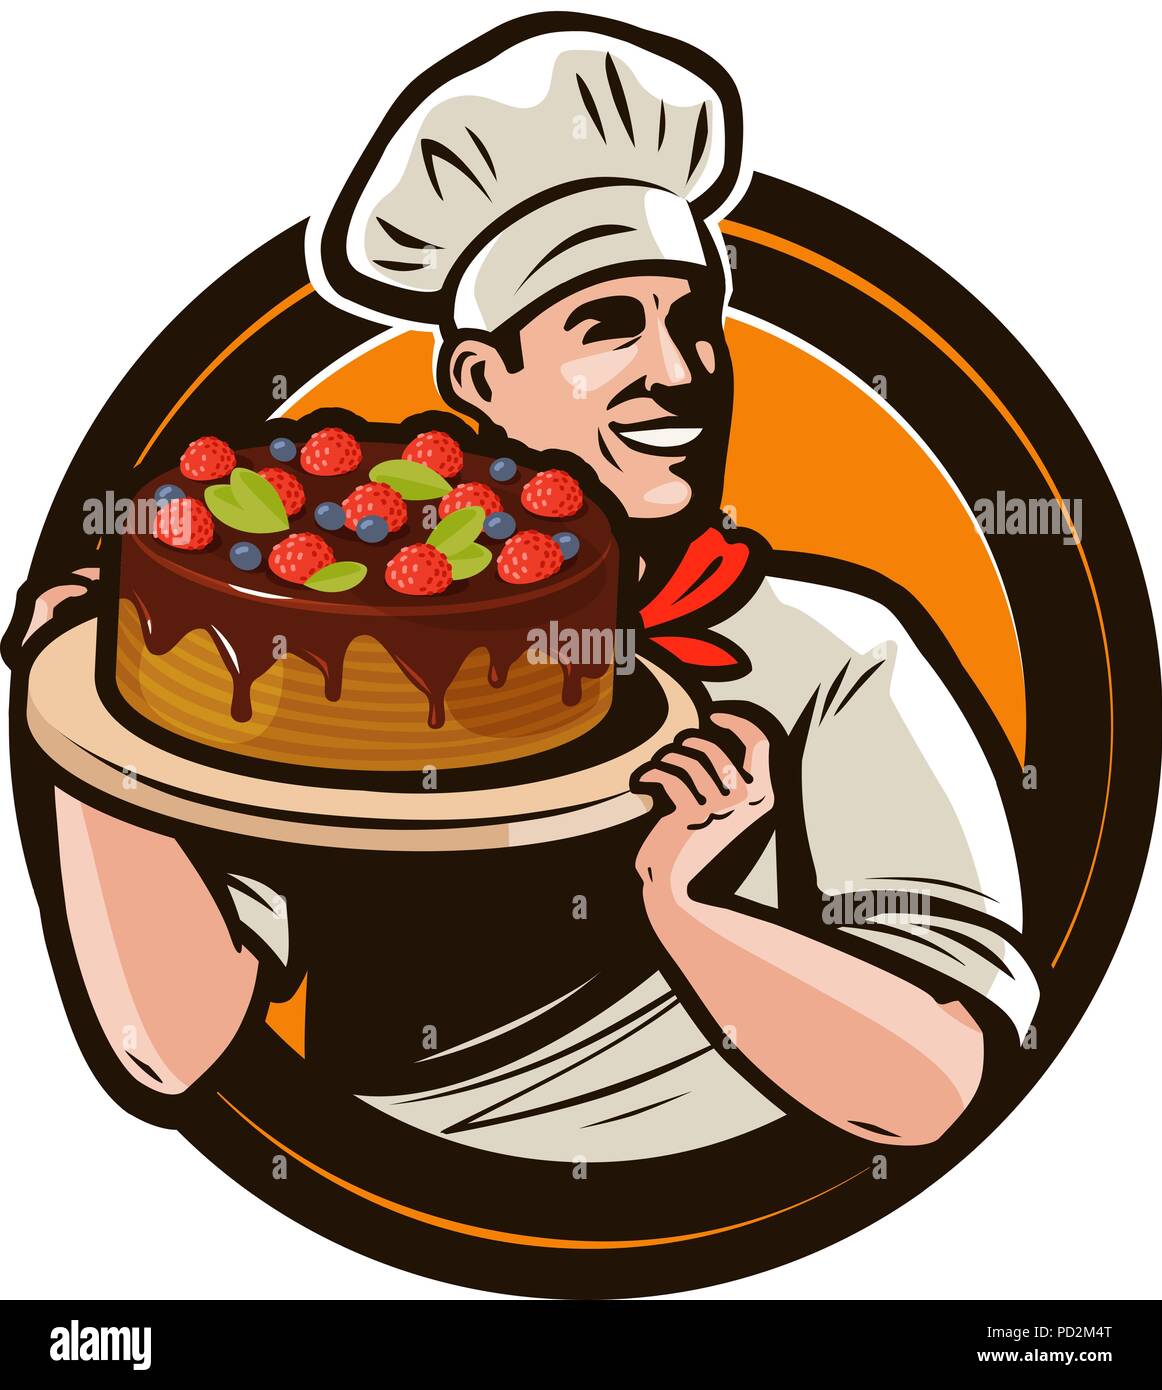 Pasticceria logo o etichetta. Lo chef con la torta su un vassoio. Fumetto illustrazione vettoriale Illustrazione Vettoriale